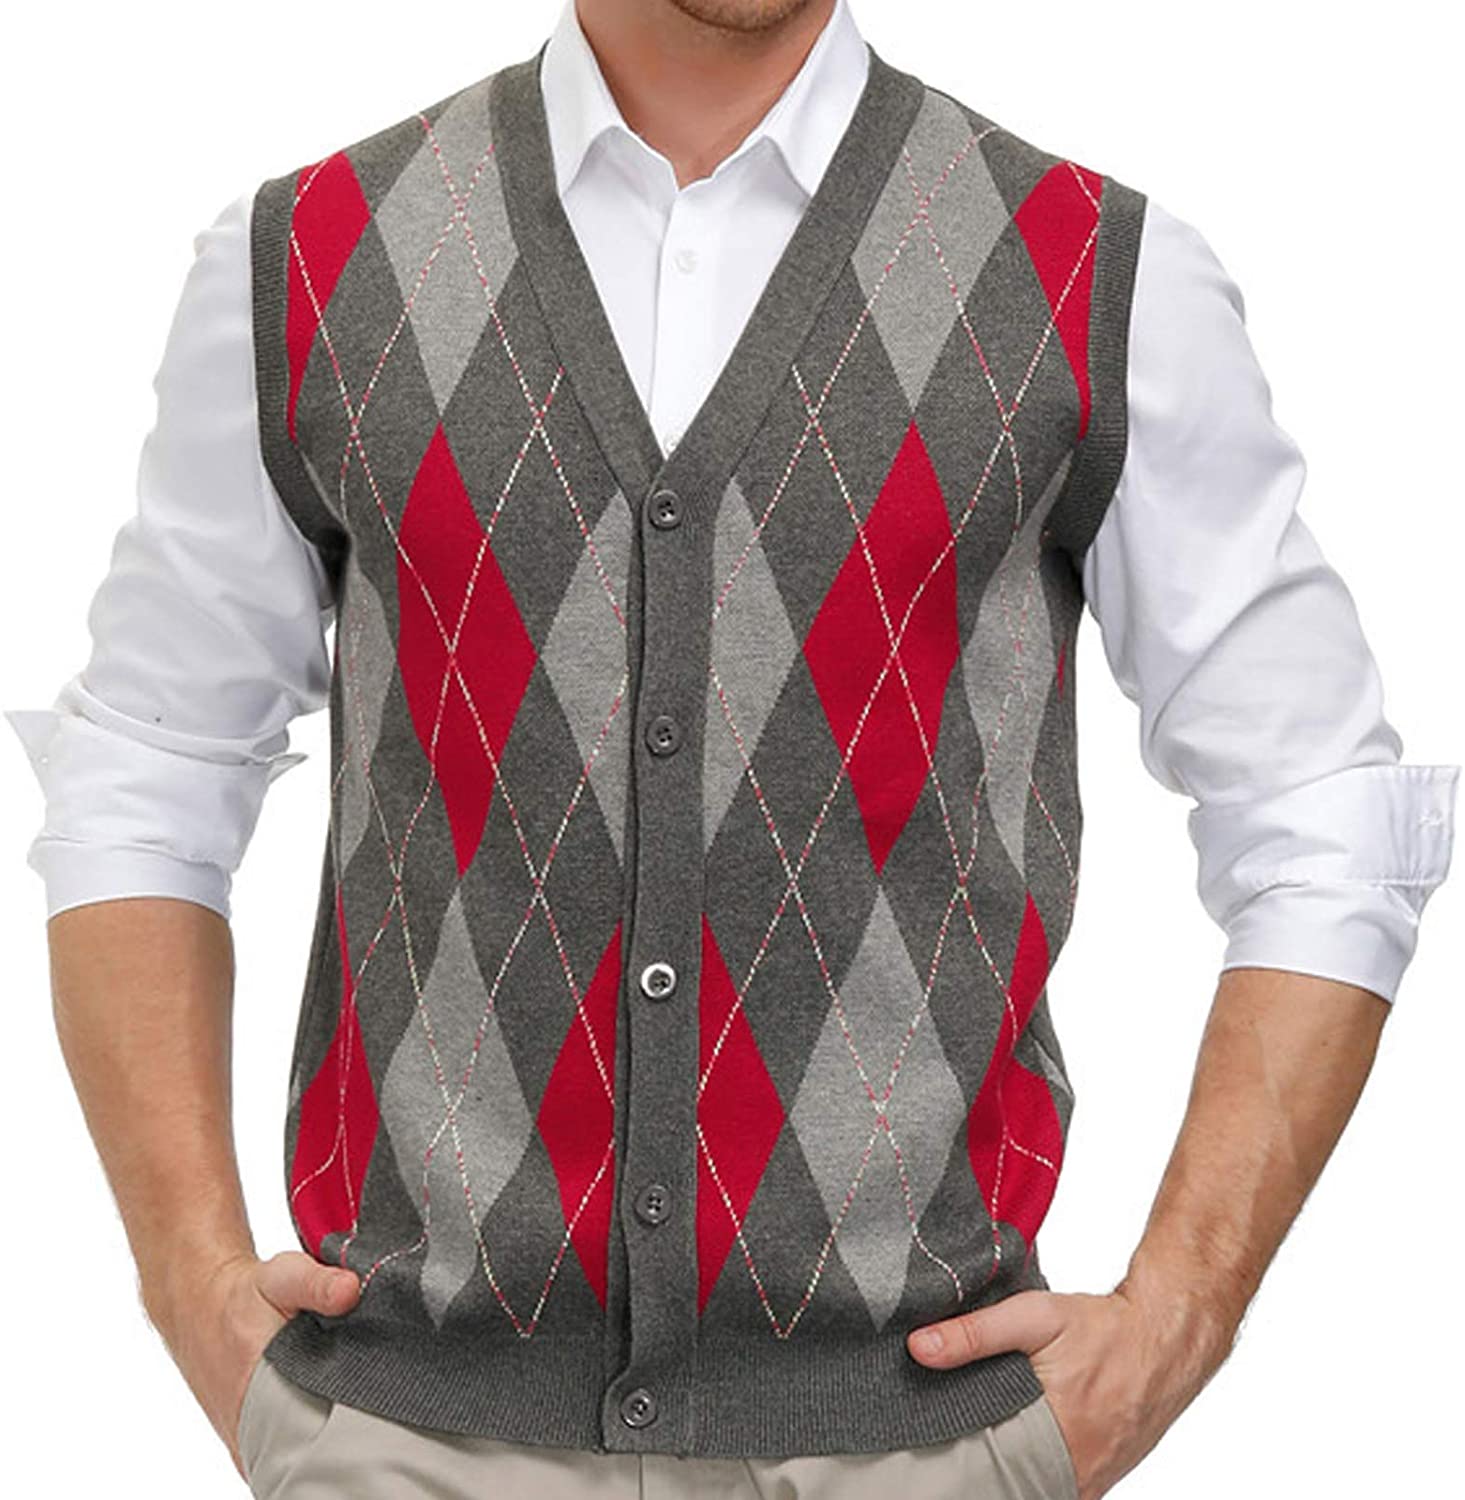 Immigratie Trunk bibliotheek Zakje PJ PAUL JONES Men's Sweater Vest Cardigan Button Front Knitwear Contrast  Color A | eBay